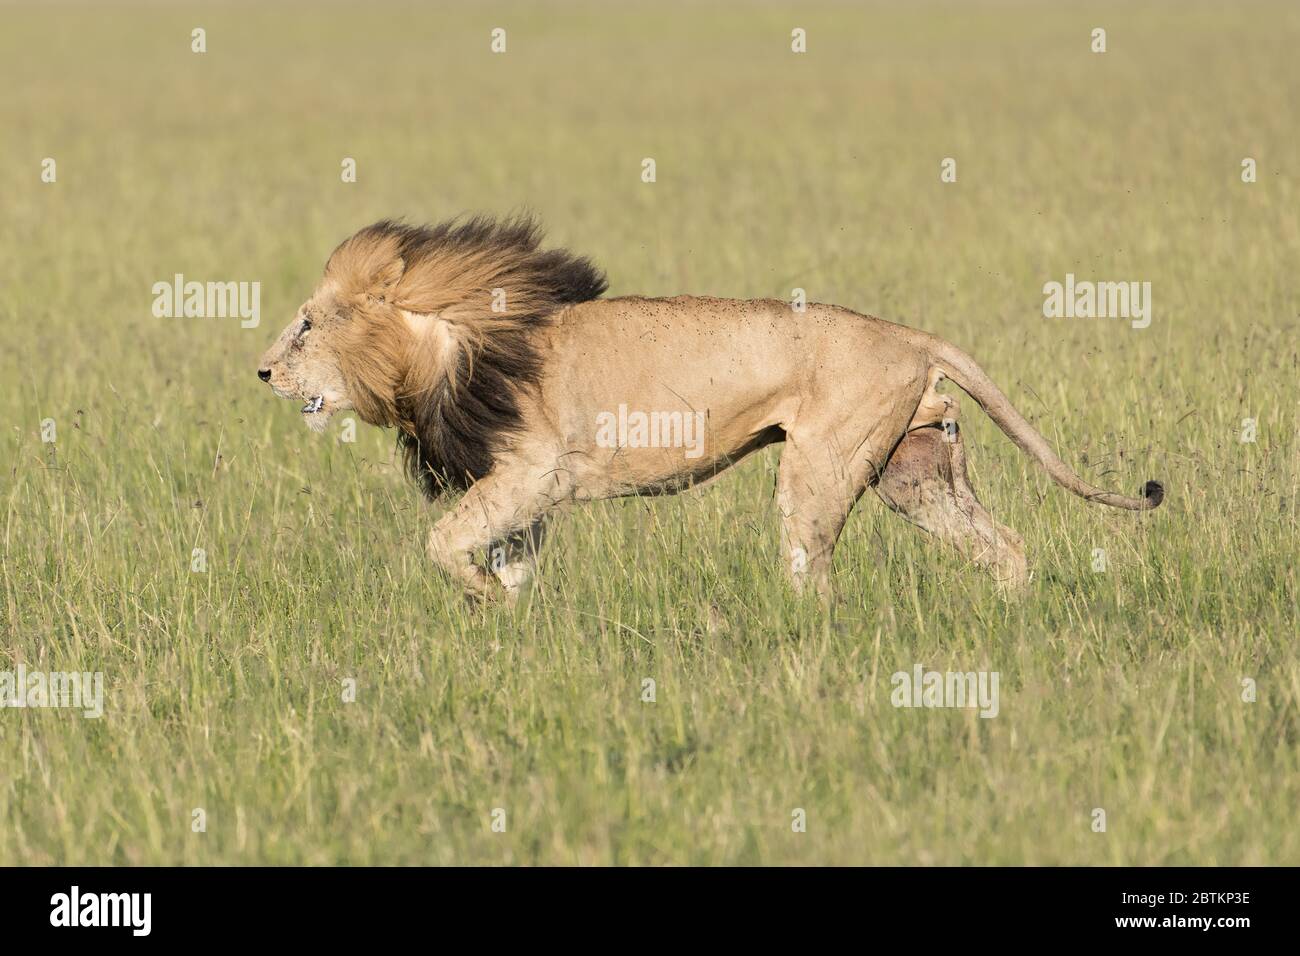 El león masculino defiende su territorio en los pastizales de Kenia. Foto de stock